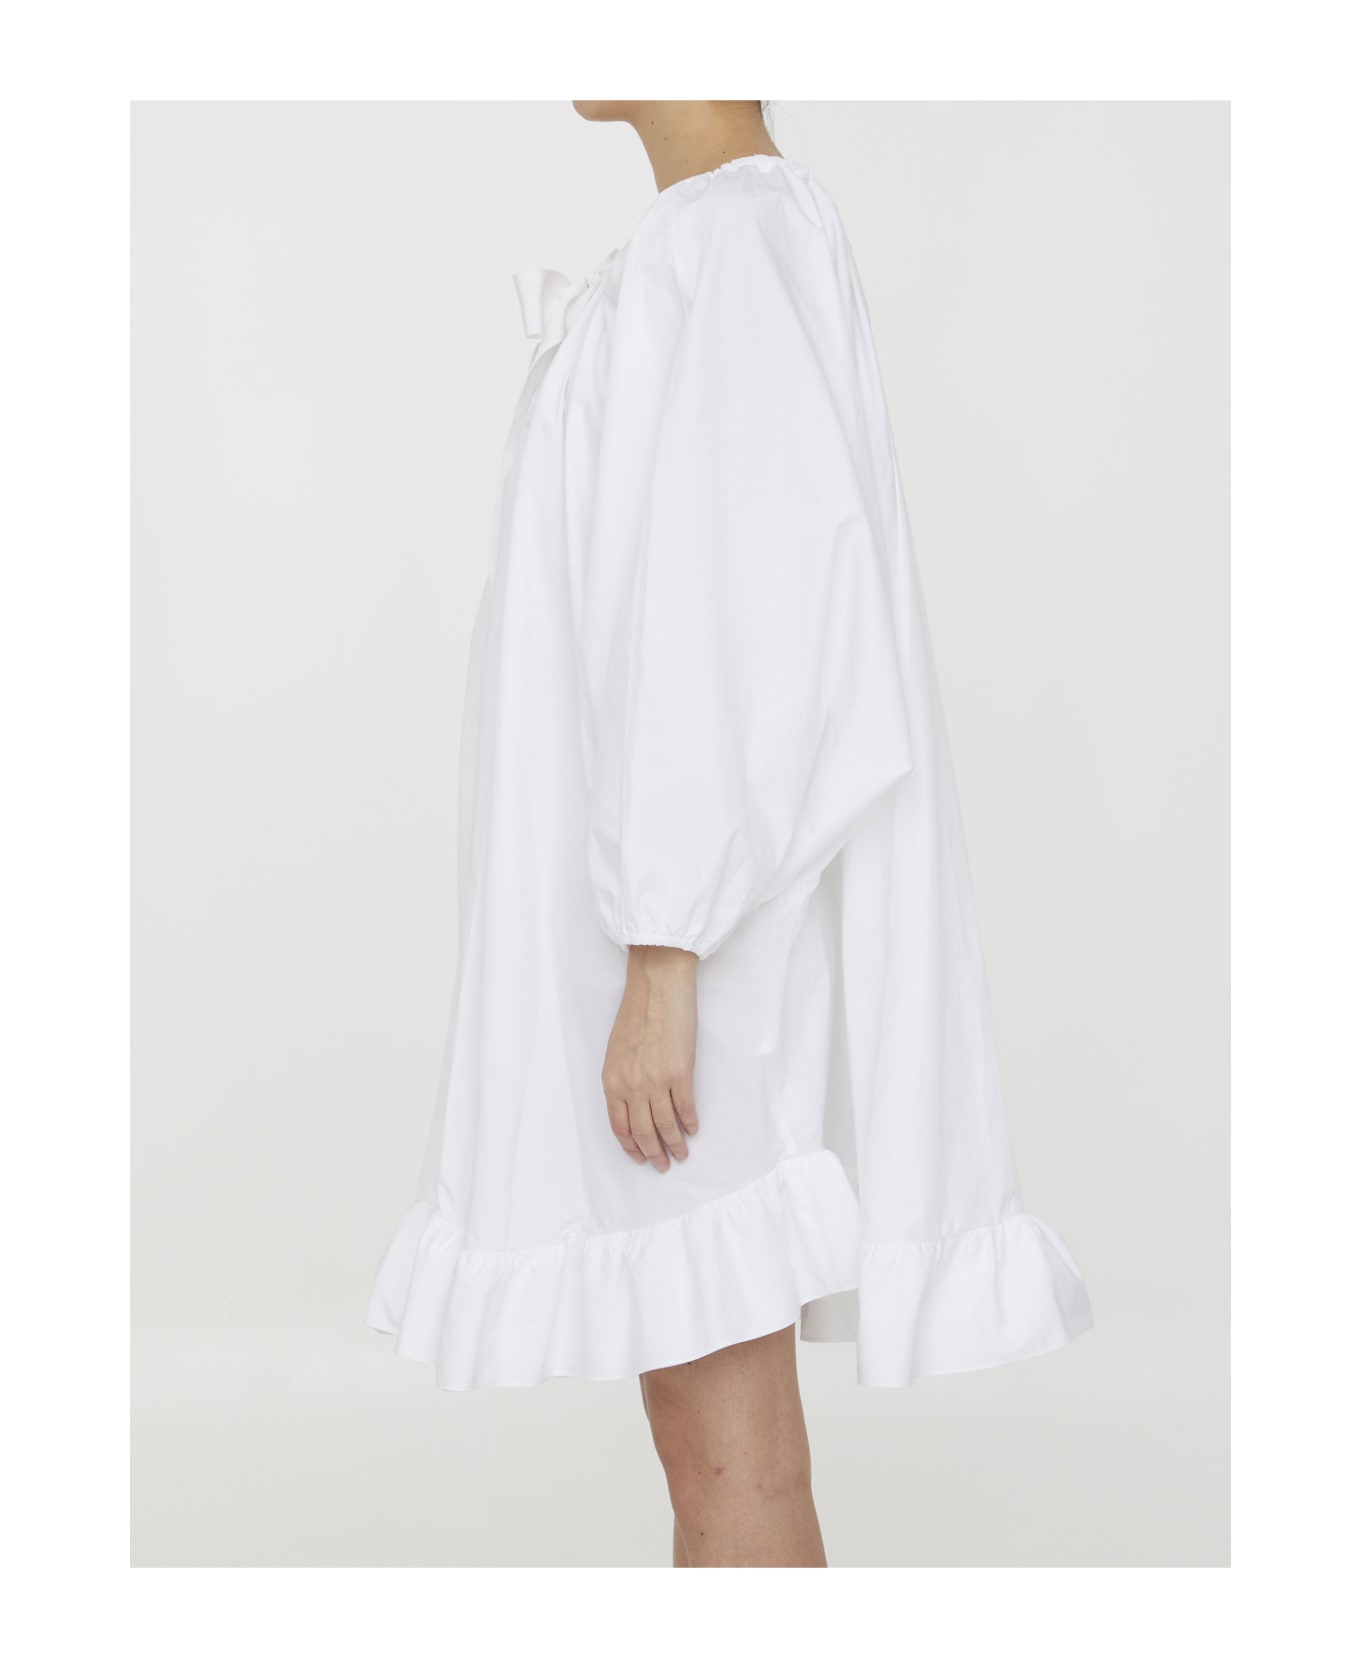 Patou Ruffled Faille Dress - WHITE ブラウス